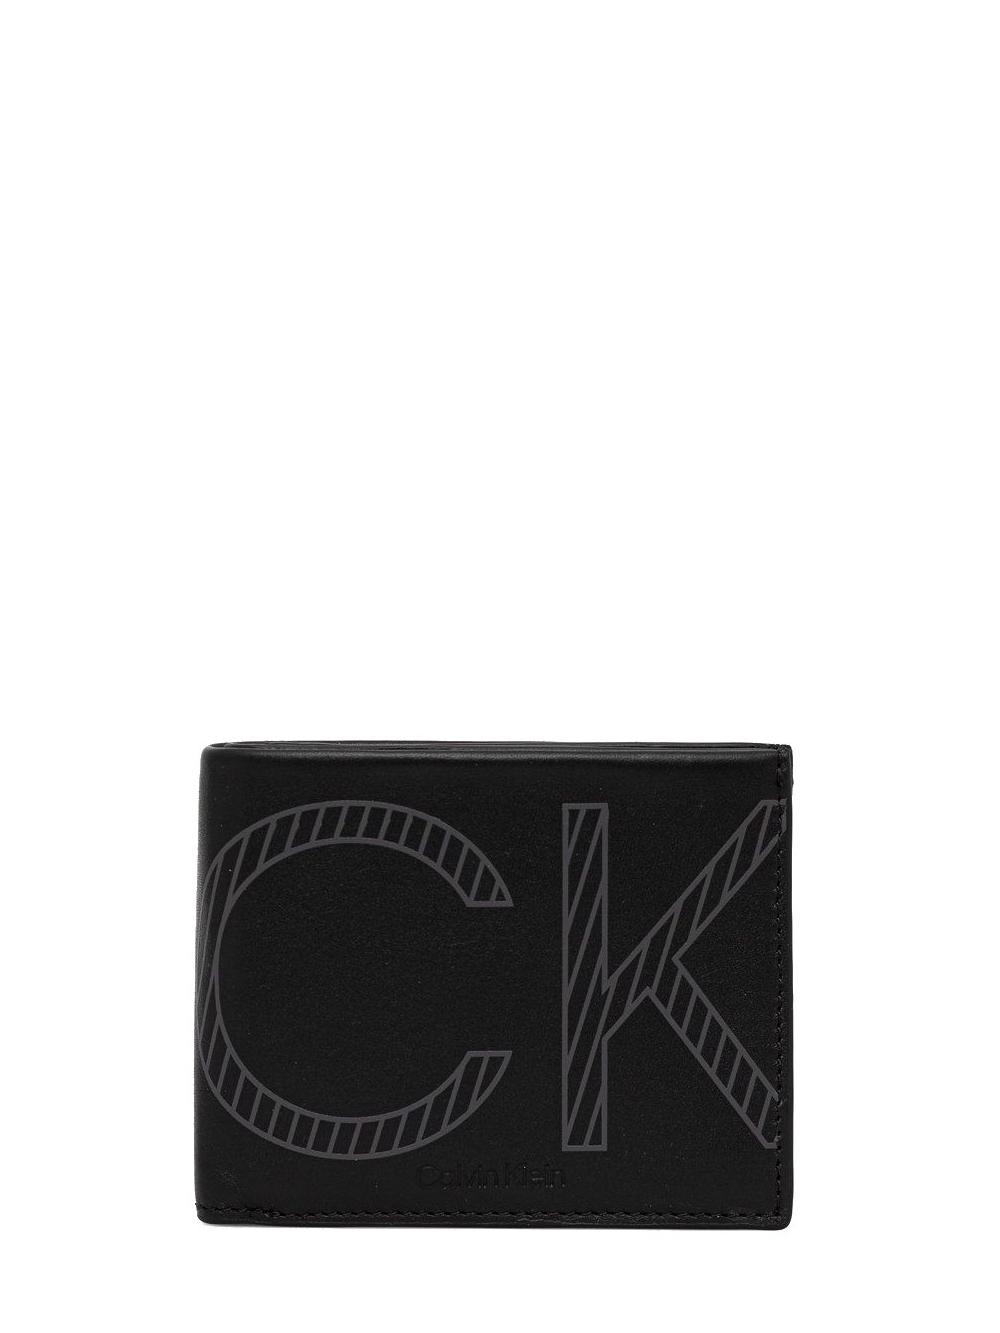 Calvin Klein Xl Mono Cartera De Hombre, En Piel Mono Calsico Negro -  ¡Compra A Precios De Outlet!